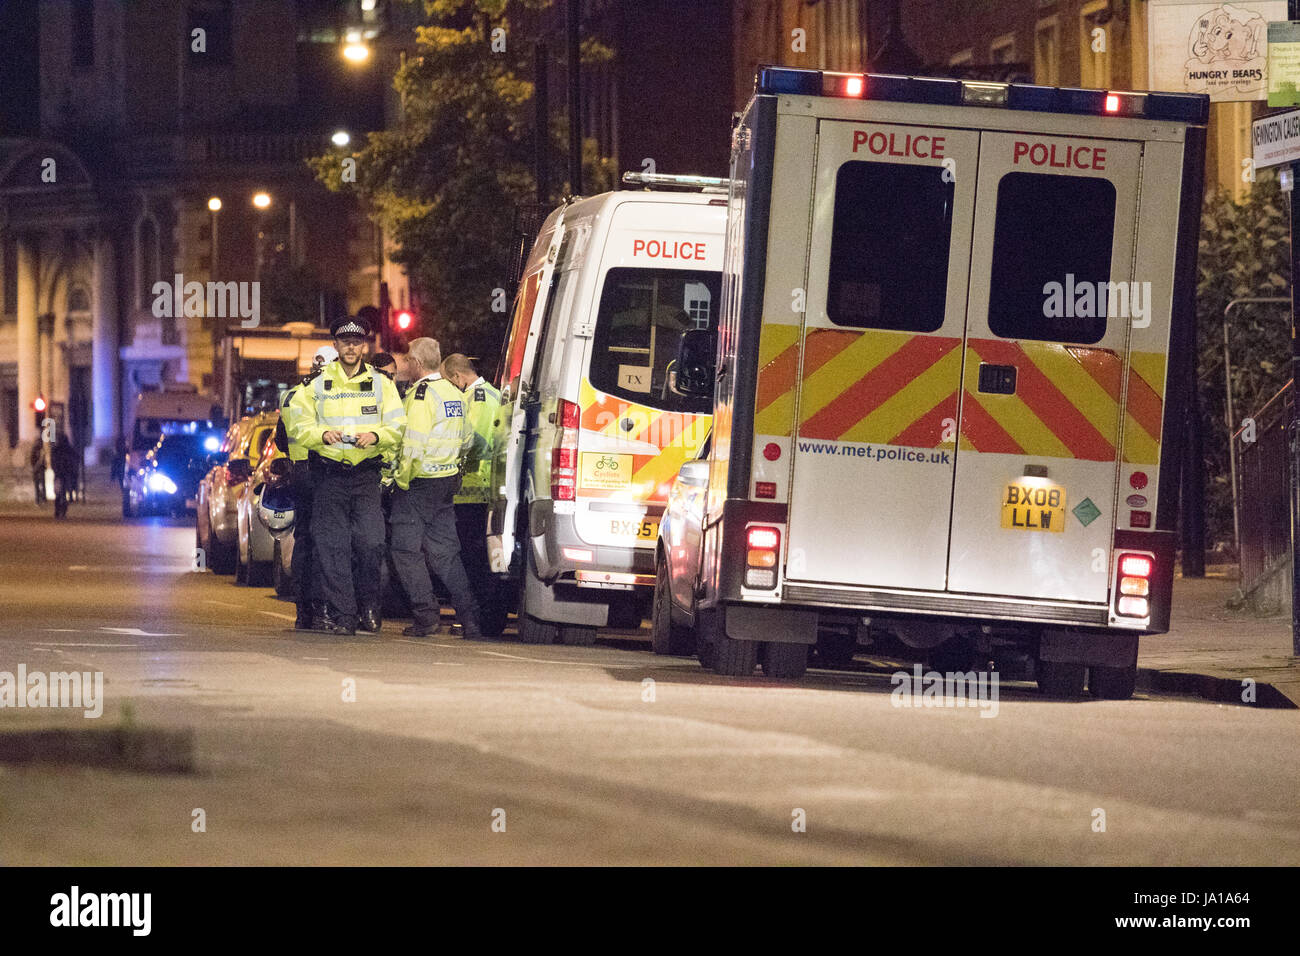 Londres, Royaume-Uni. 04 Juin, 2017. La police et les unités de réponse répondre à incident terroriste sur le pont de Londres samedi soir. Six personnes ont été tuées dans des attentats de Londres. Photos prises peu après minuit le samedi soir, dimanche matin. Credit : Brayan Lopez/Alamy Live News Banque D'Images